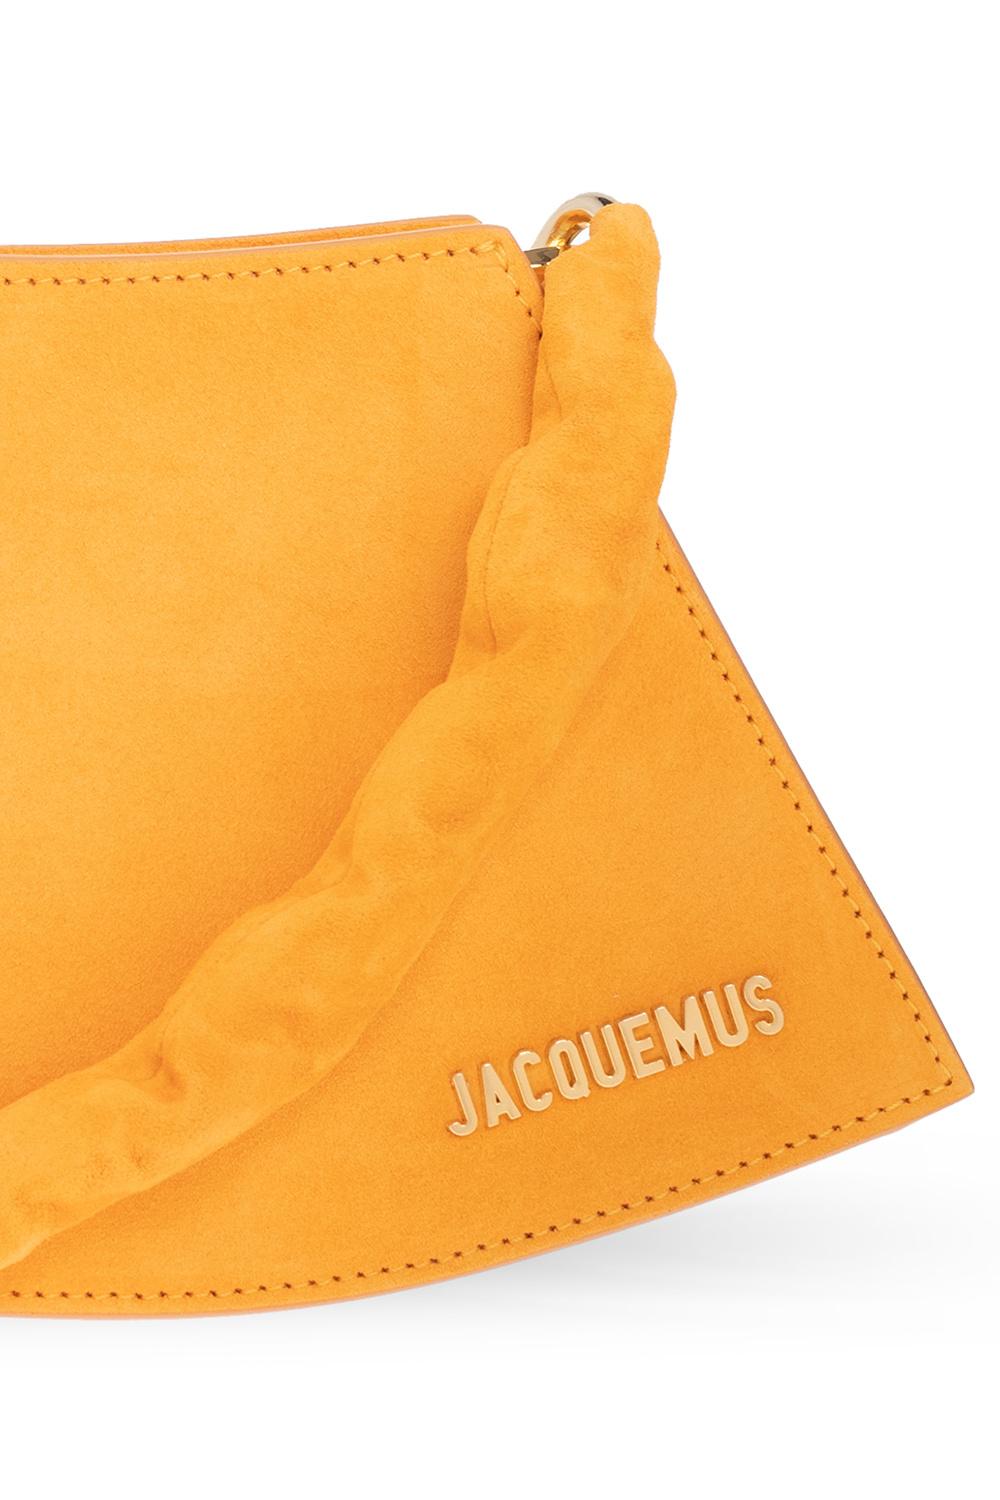 NWT Jacquemus Light Green Suede La Vague Shoulder Bag